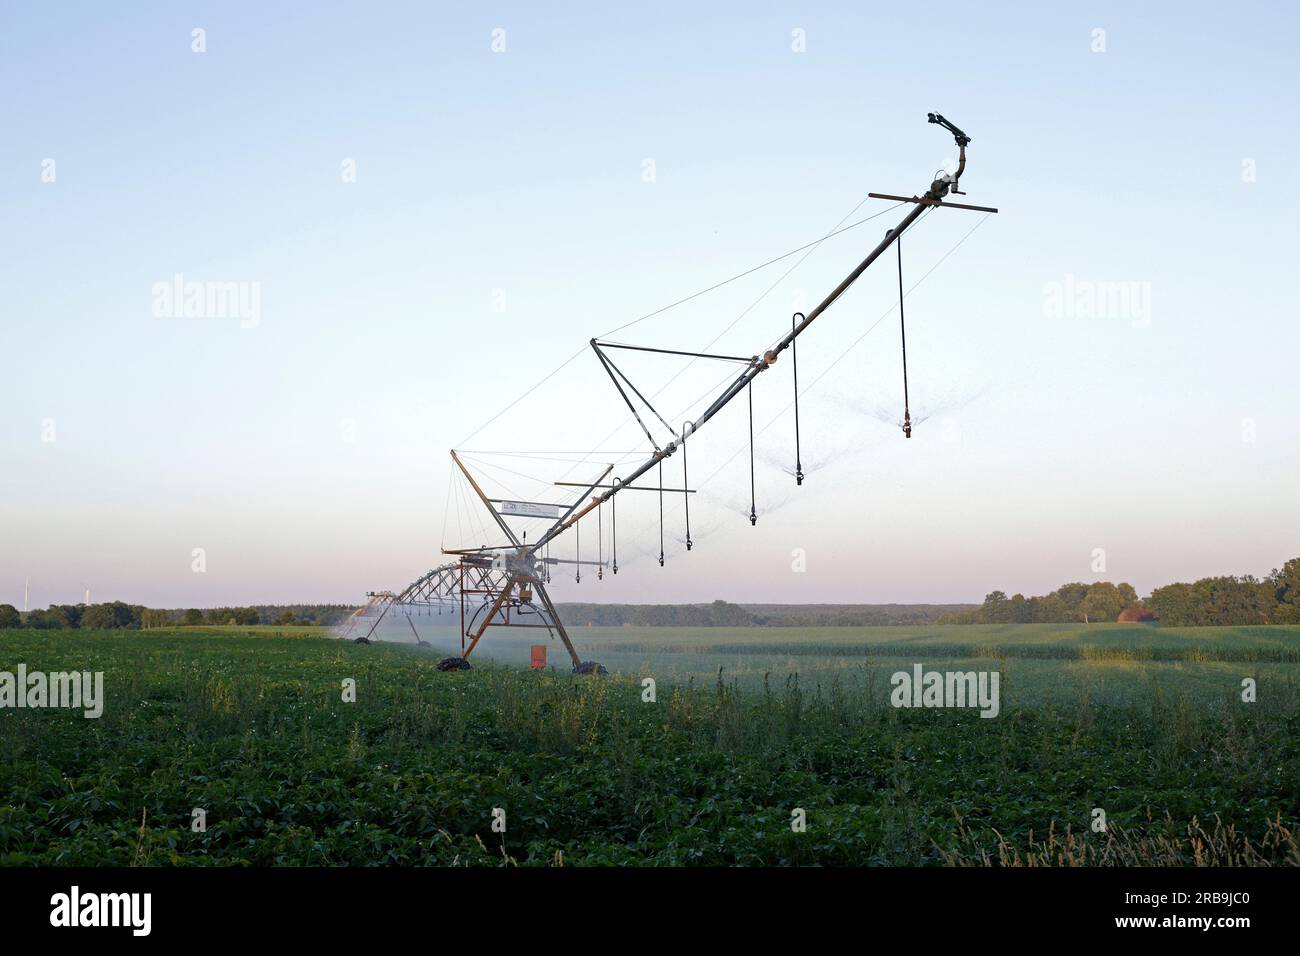 Impianto di irrigazione, giacimento di patate, Melbeck, Ilmenau, bassa Sassonia, Germania Foto Stock